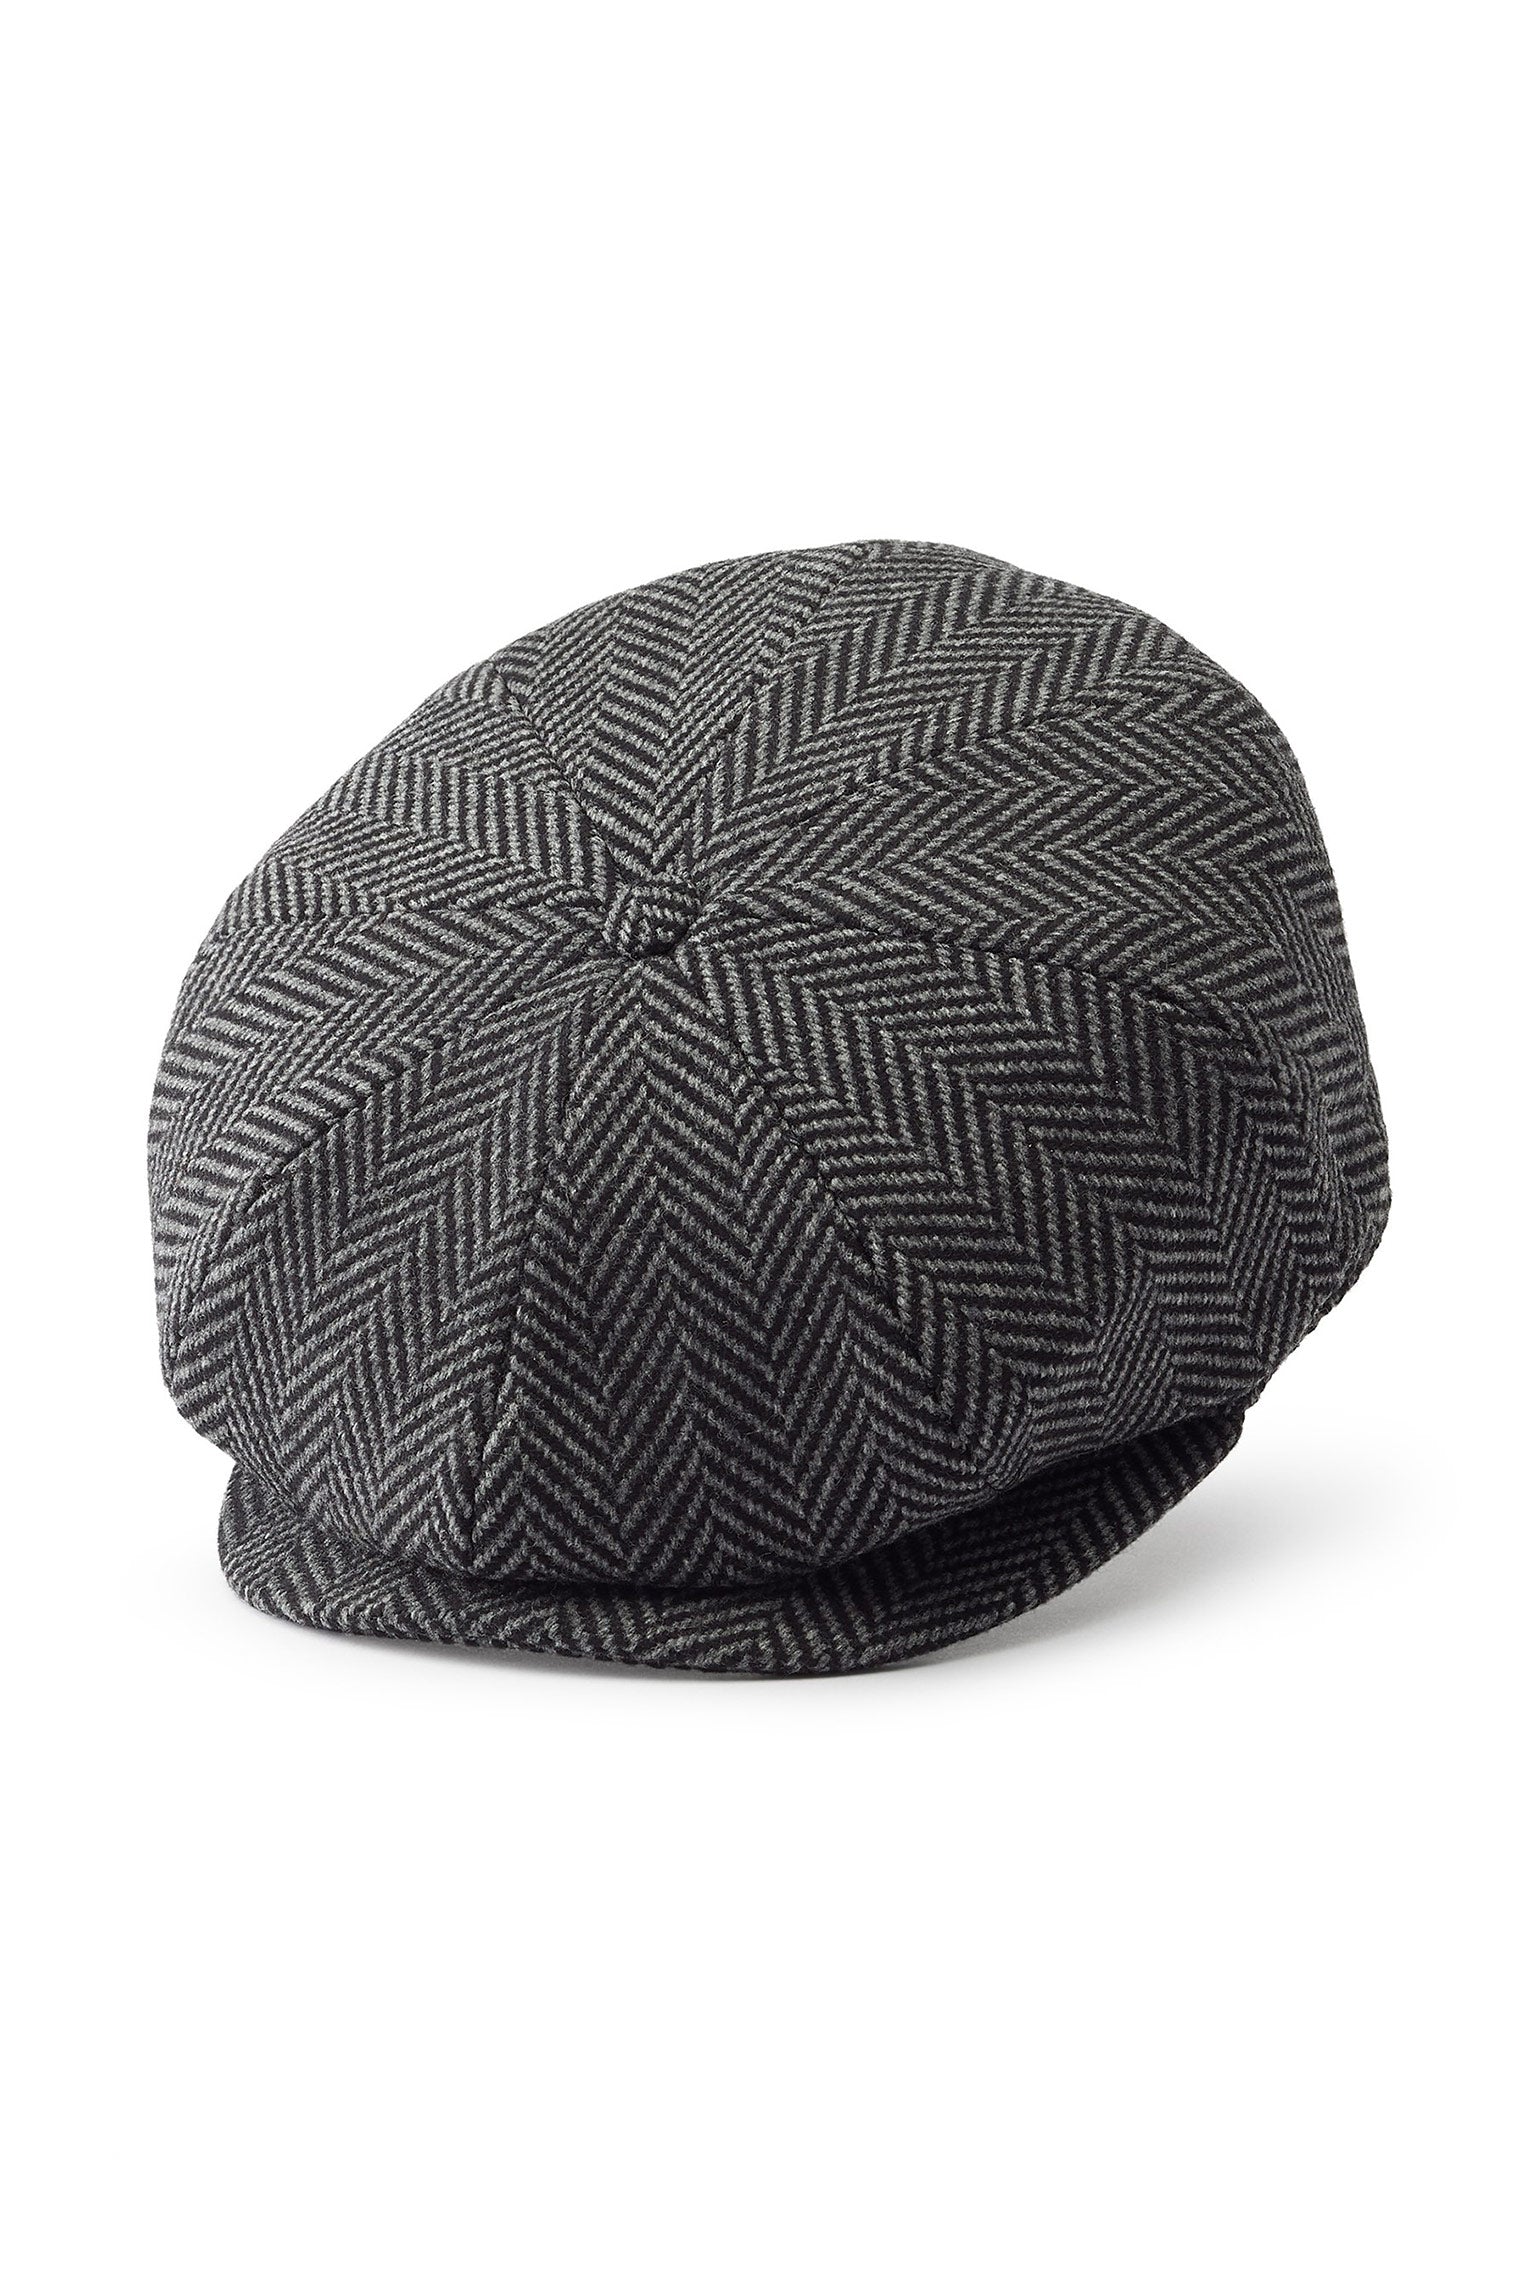 Escorial Wool Tremelo Bakerboy Cap - Men's Hats - Lock & Co. Hatters London UK